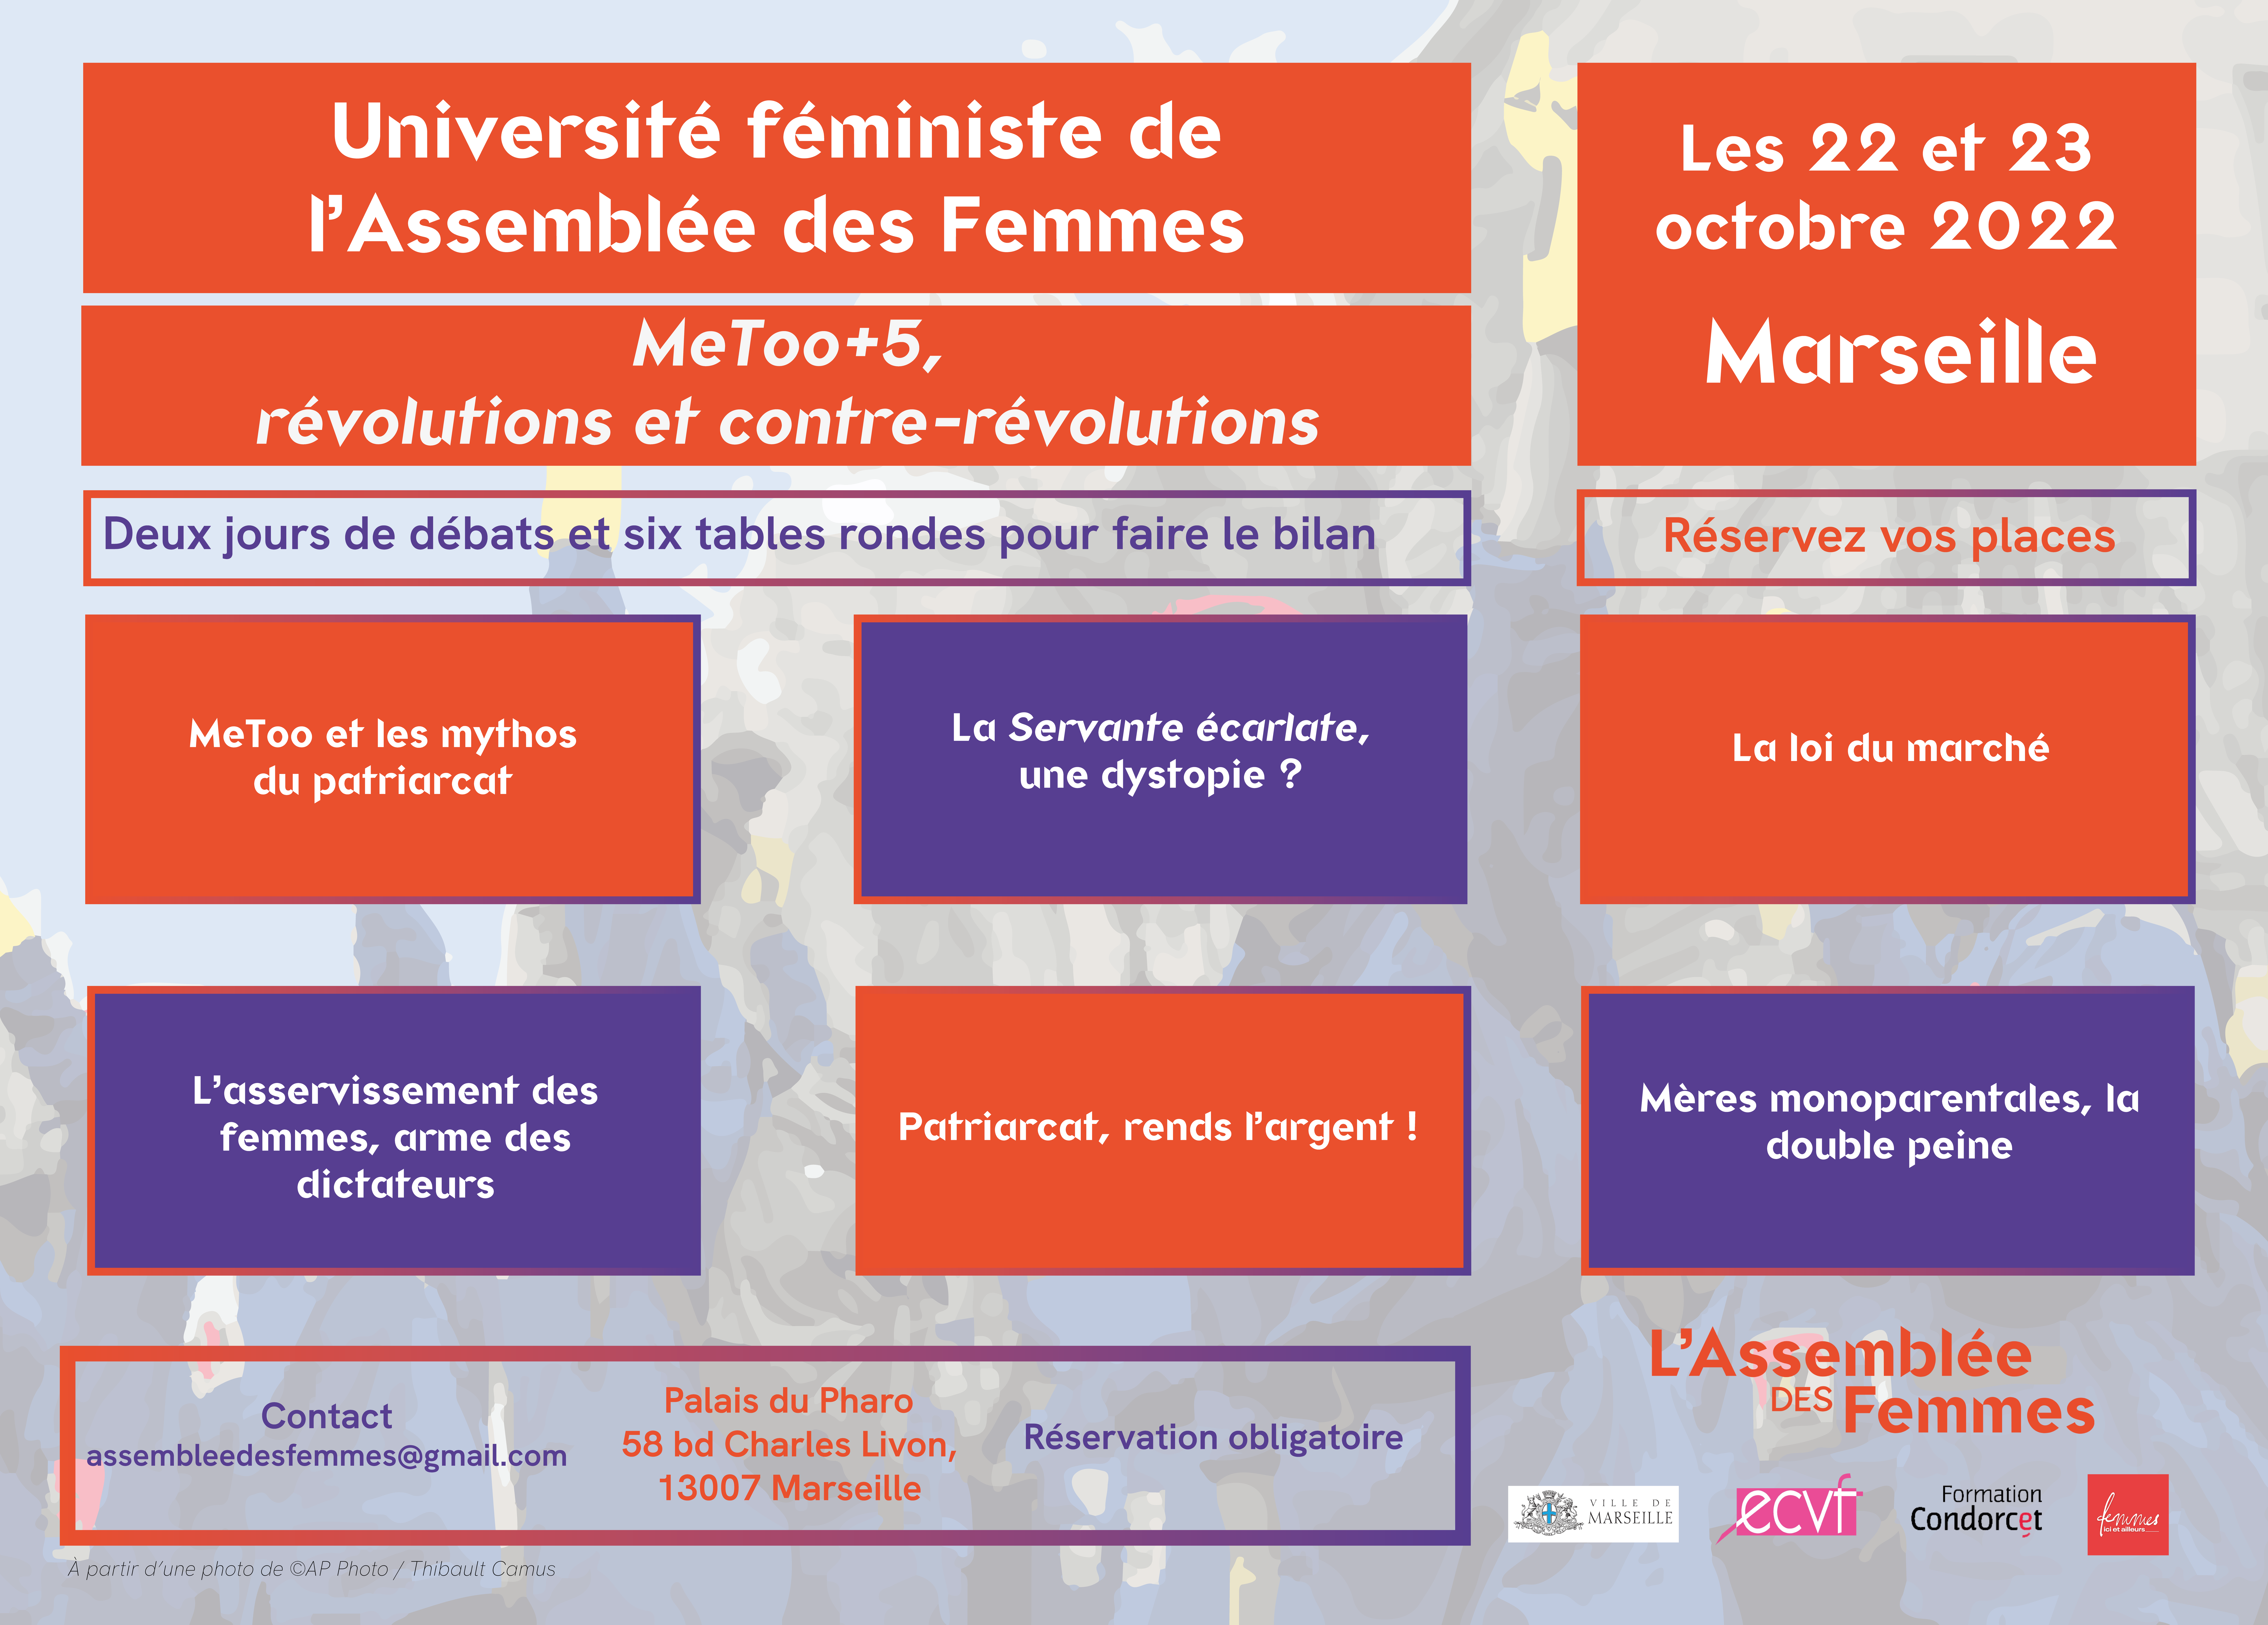 Université féministe de l’Assemblée des Femmes : MeToo +5, révolutions et contre-révolutions